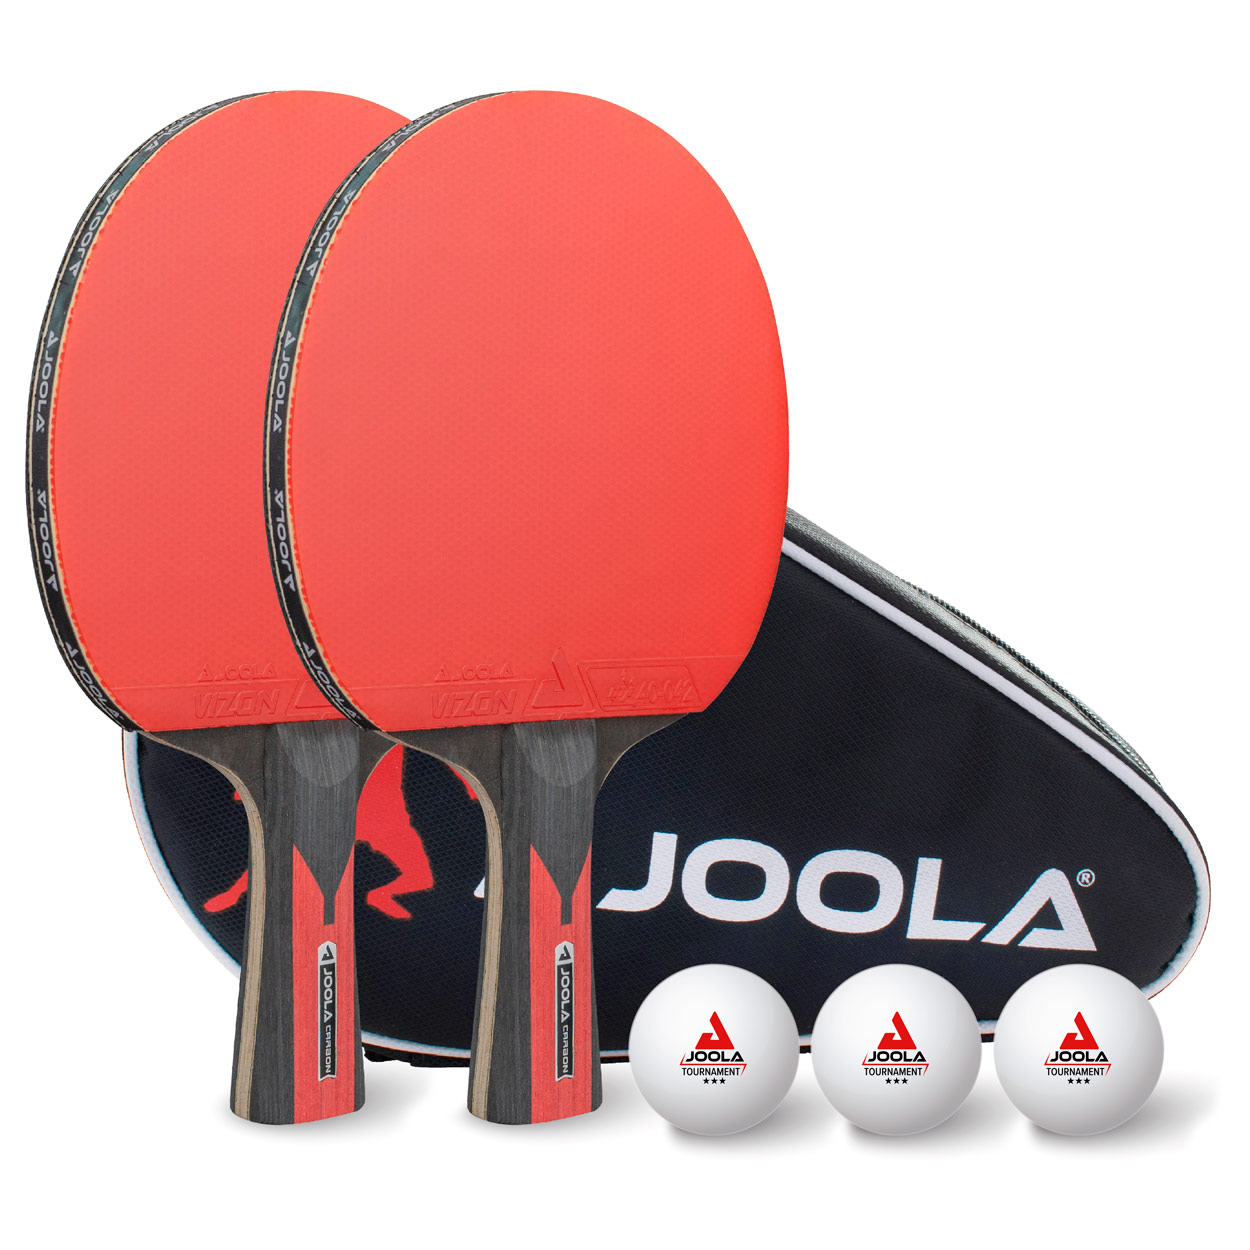 JOOLA Tischtennis-Set DUO CARBON, 2 TT-Schläger + 3 TT-Bälle günstig online kaufen Sport-Tec